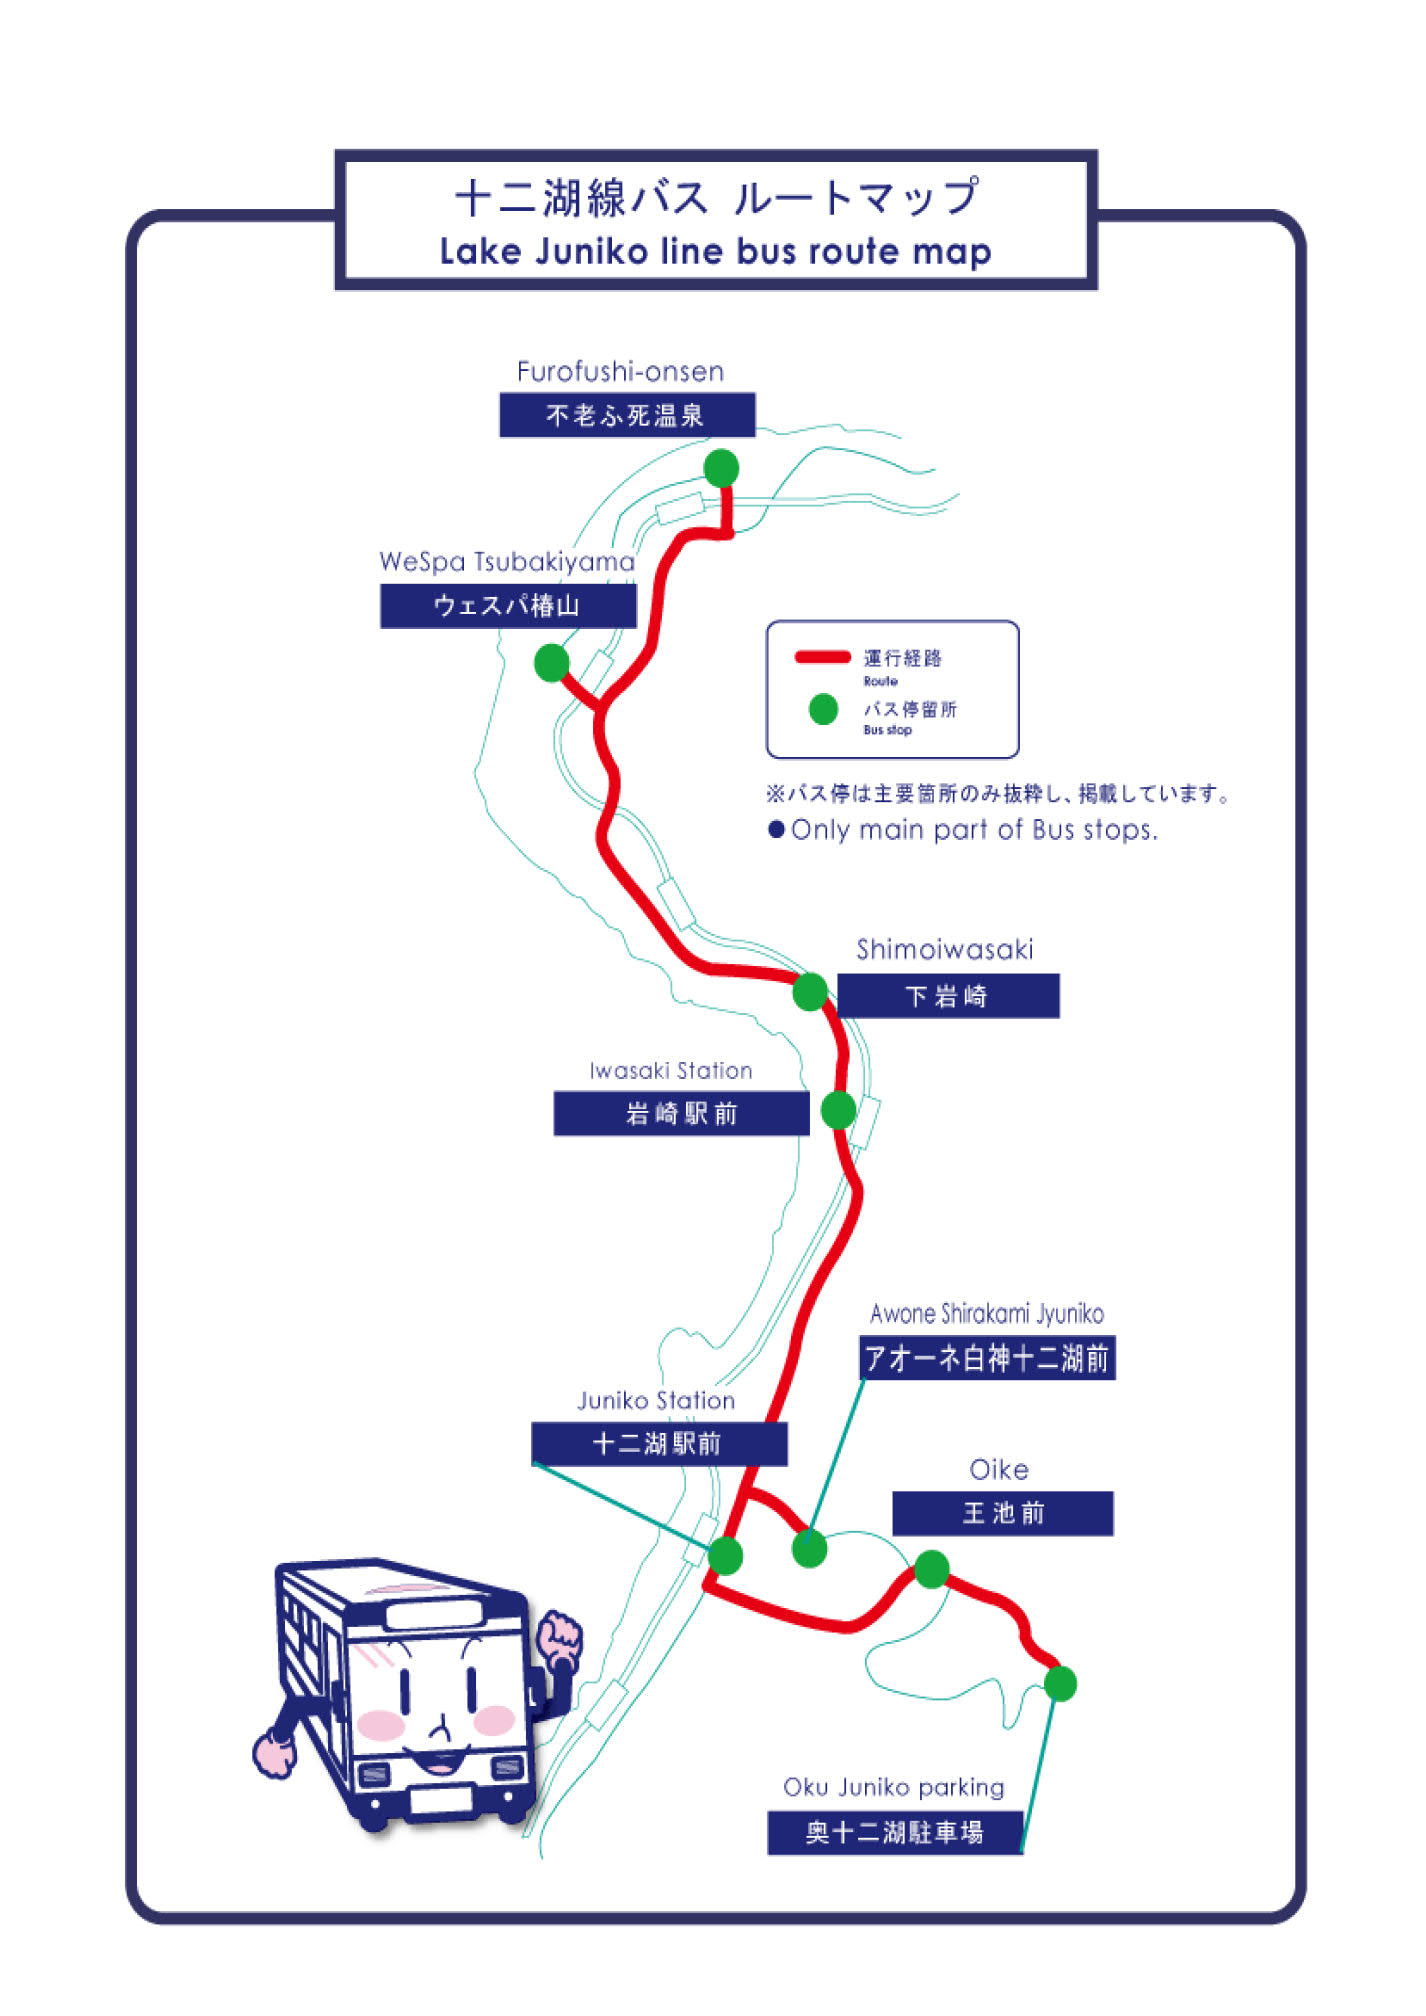 弘南バスで行く十二湖の旅